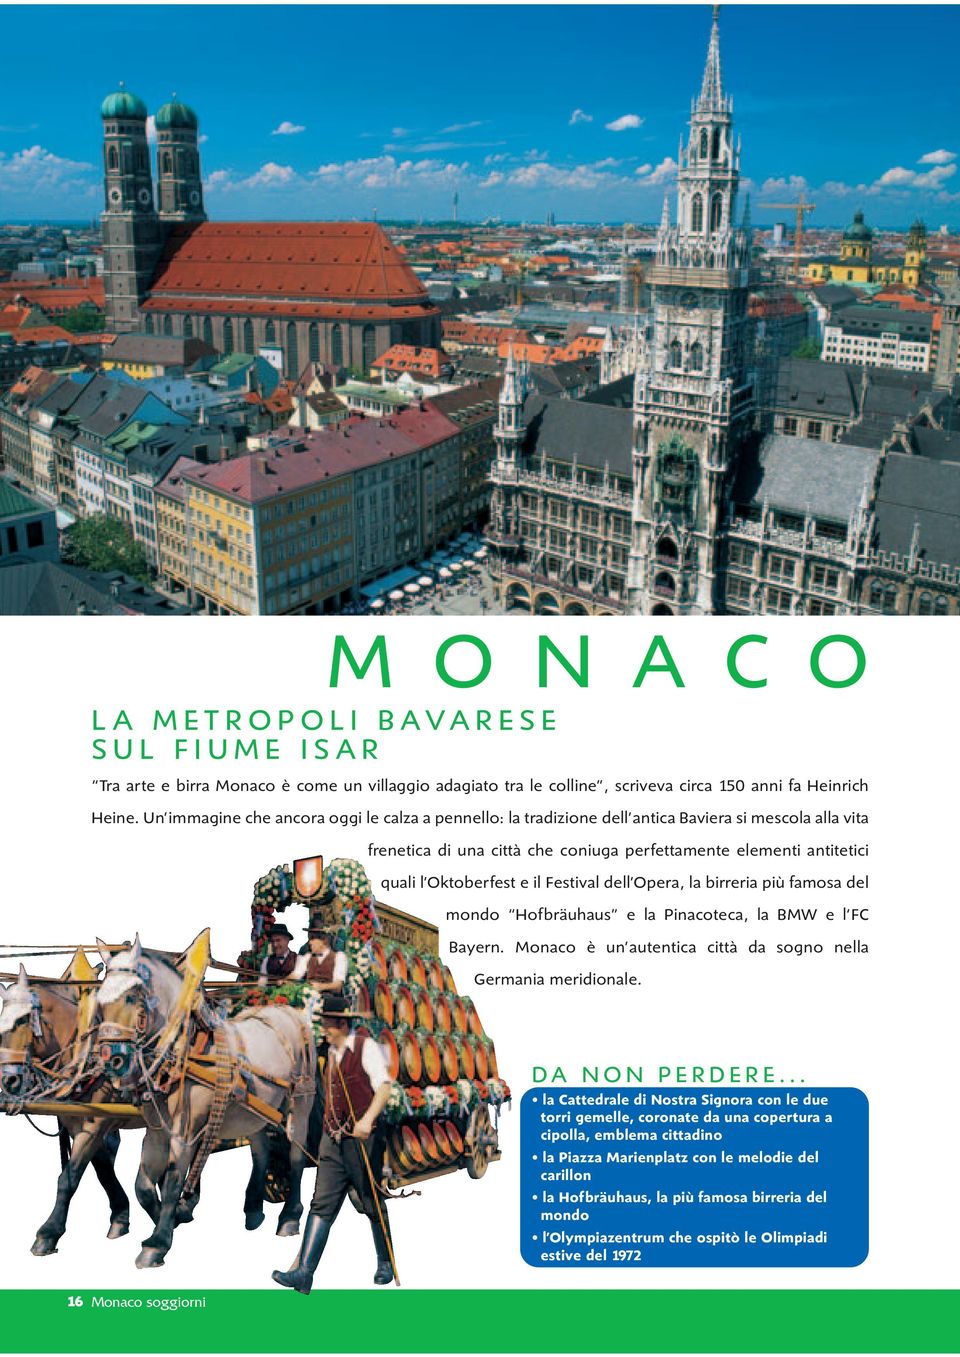 Festival dell Opera, la birreria più famosa del mondo Hofbräuhaus e la Pinacoteca, la BMW e l FC Bayern. Monaco è un autentica città da sogno nella Germania meridionale.